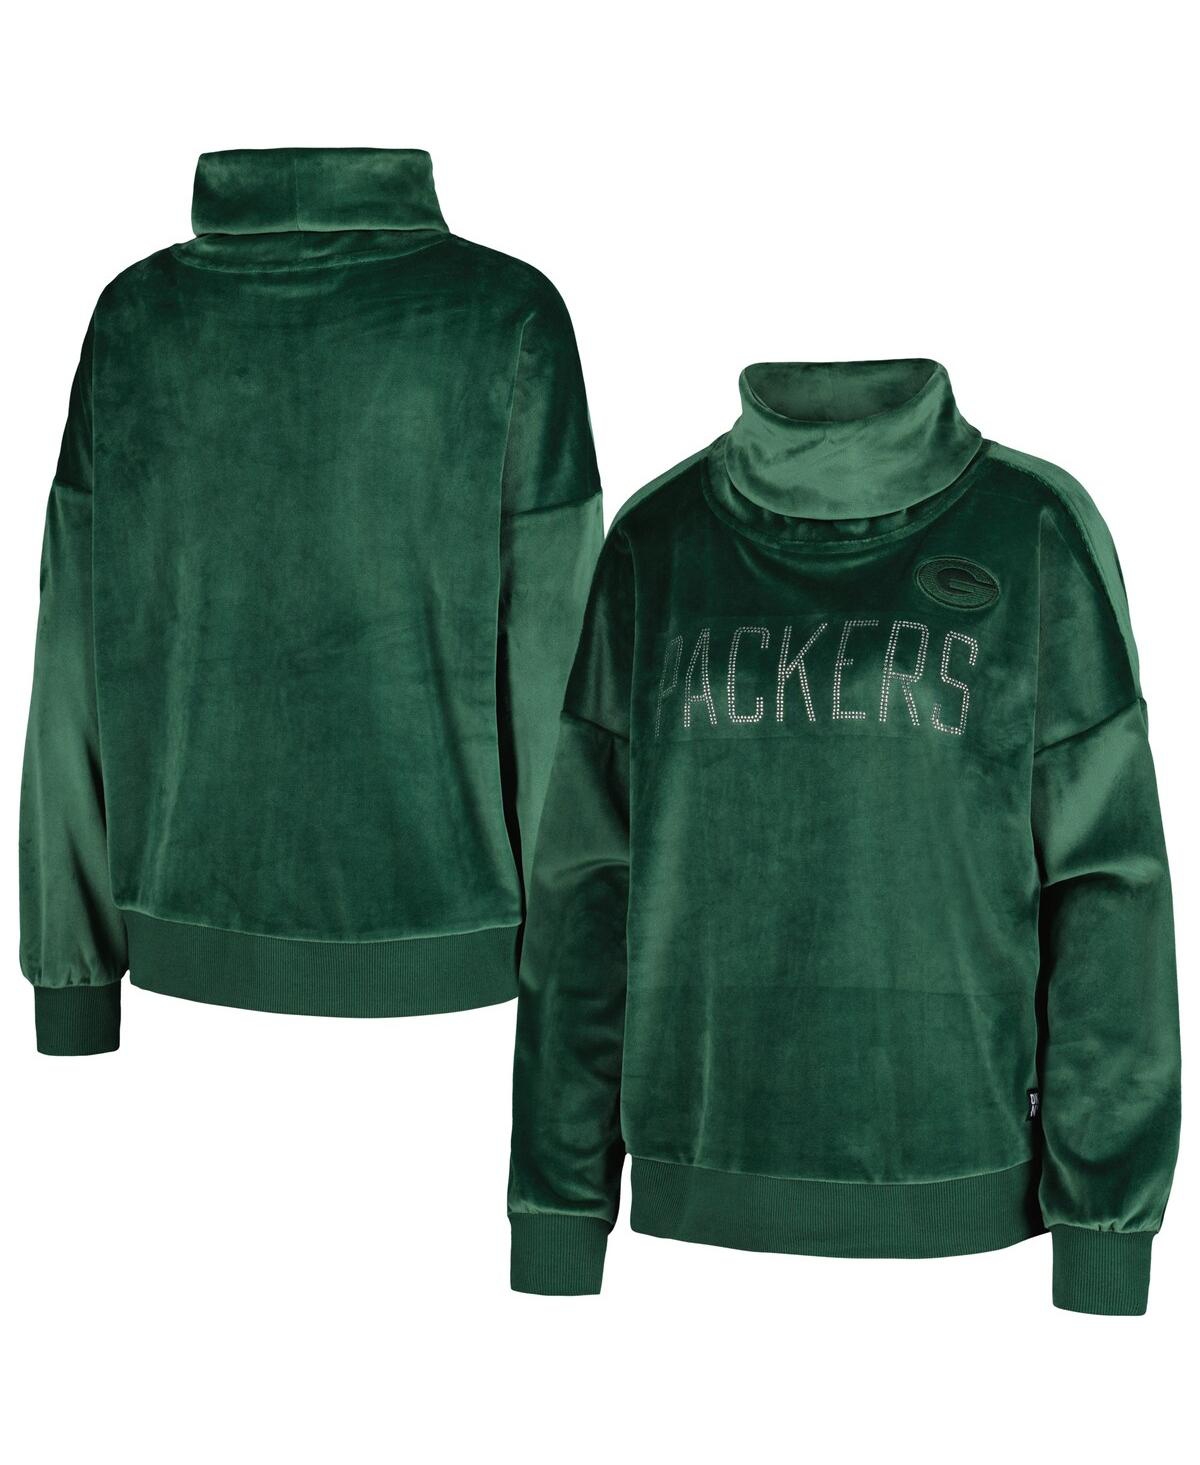 Dkny Women's  Sport Green Green Bay Packers Deliliah Rhinestone Funnel Neck Pullover Sweatshirt